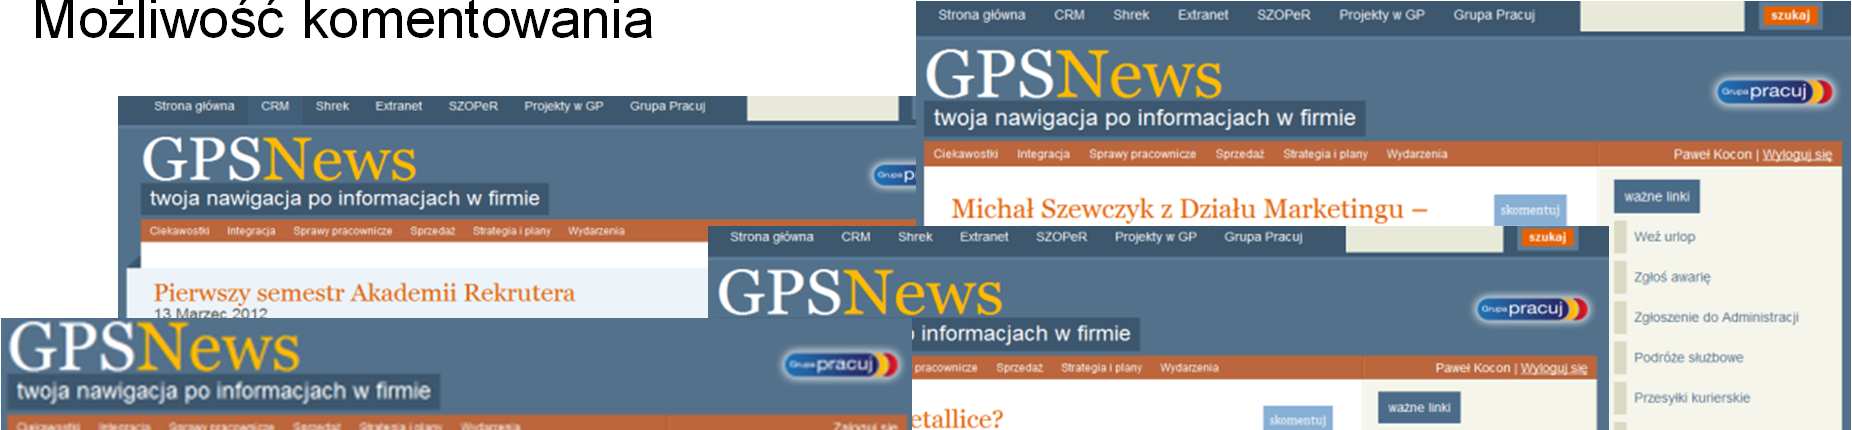 Intranet GPS News Dostępny dla